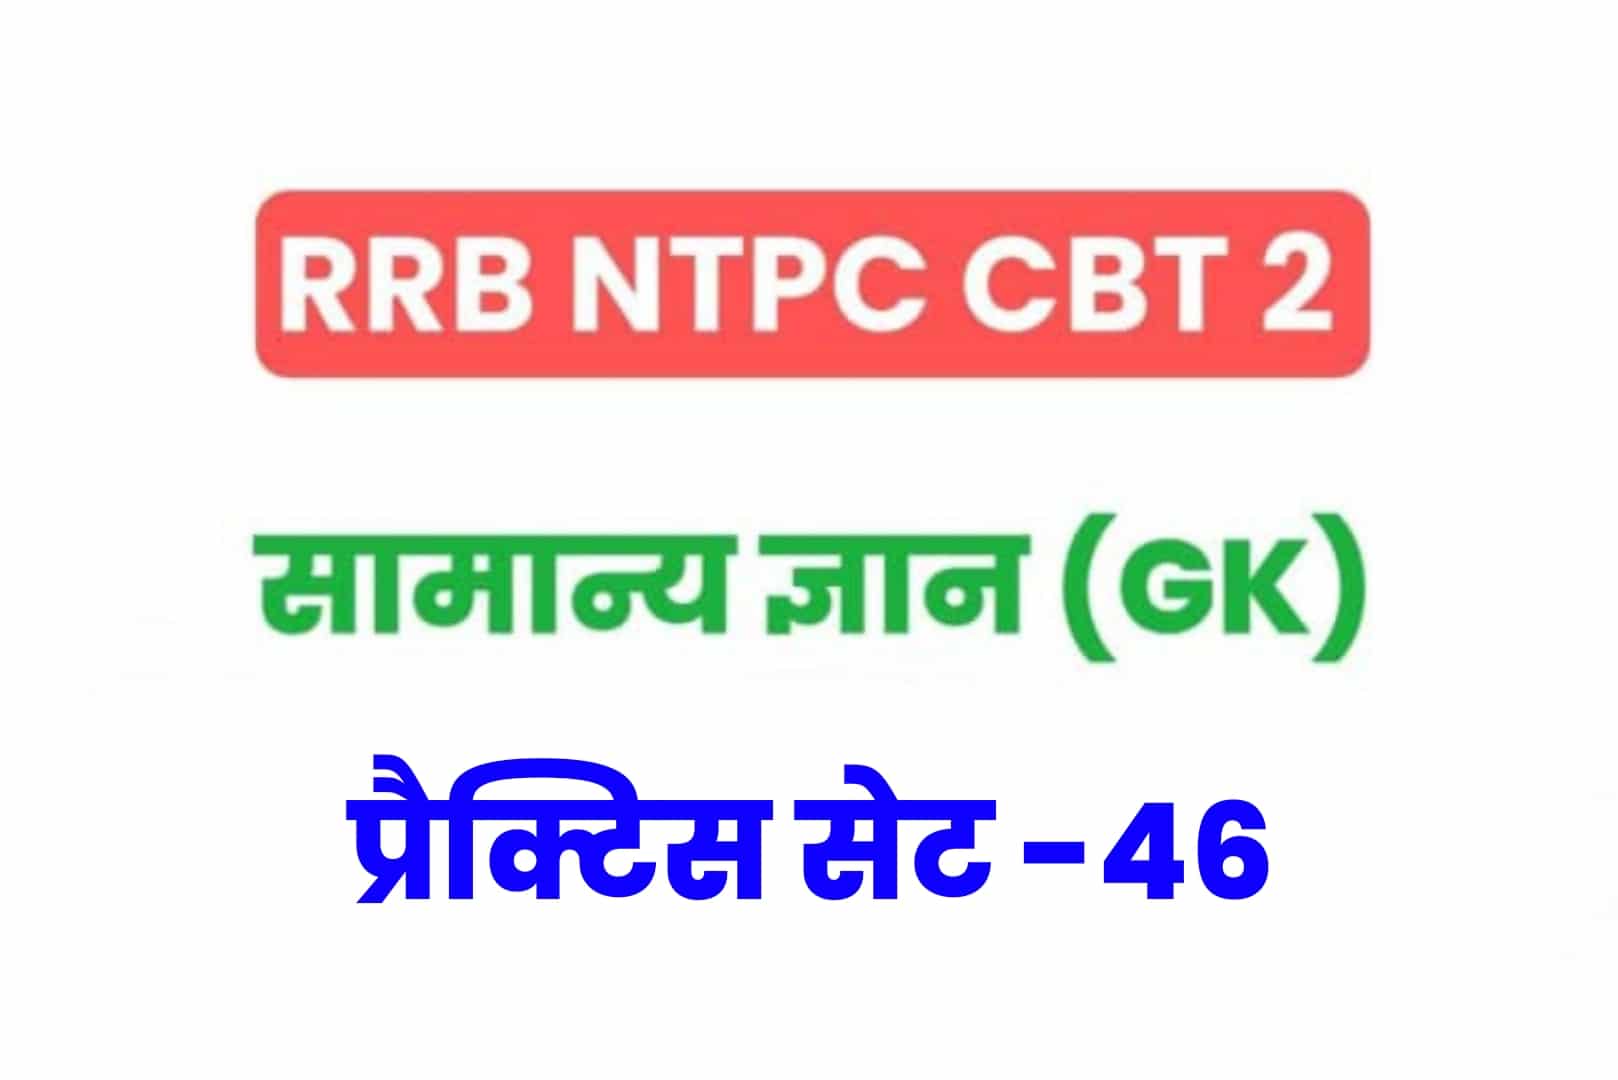 RRB NTPC CBT 2 GK प्रैक्टिस सेट 46: परीक्षा होने से पूर्व जरूर पढ़ें सामान्य ज्ञान के 25 मुख्य MCQ